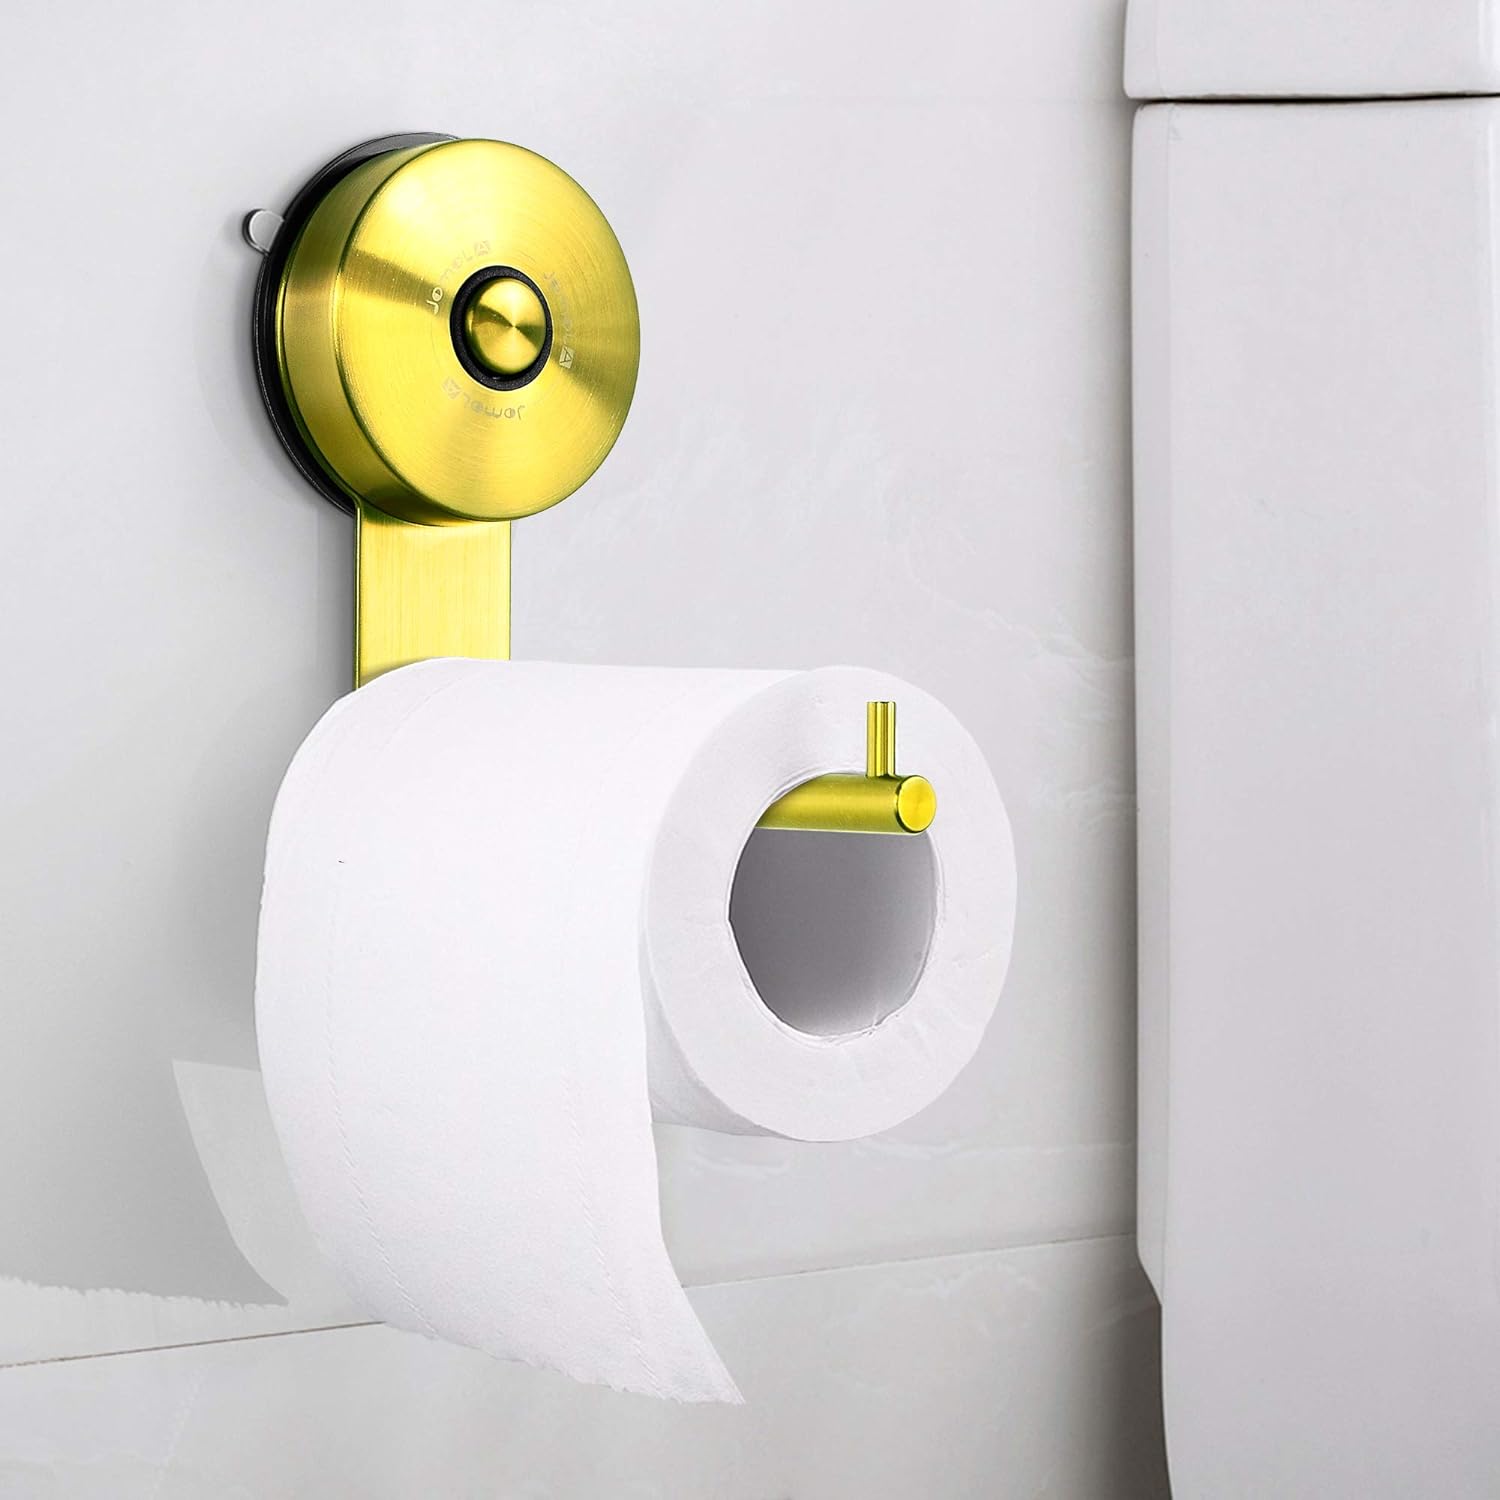 JOMOLA Pet Proof Toilet Paper Holder